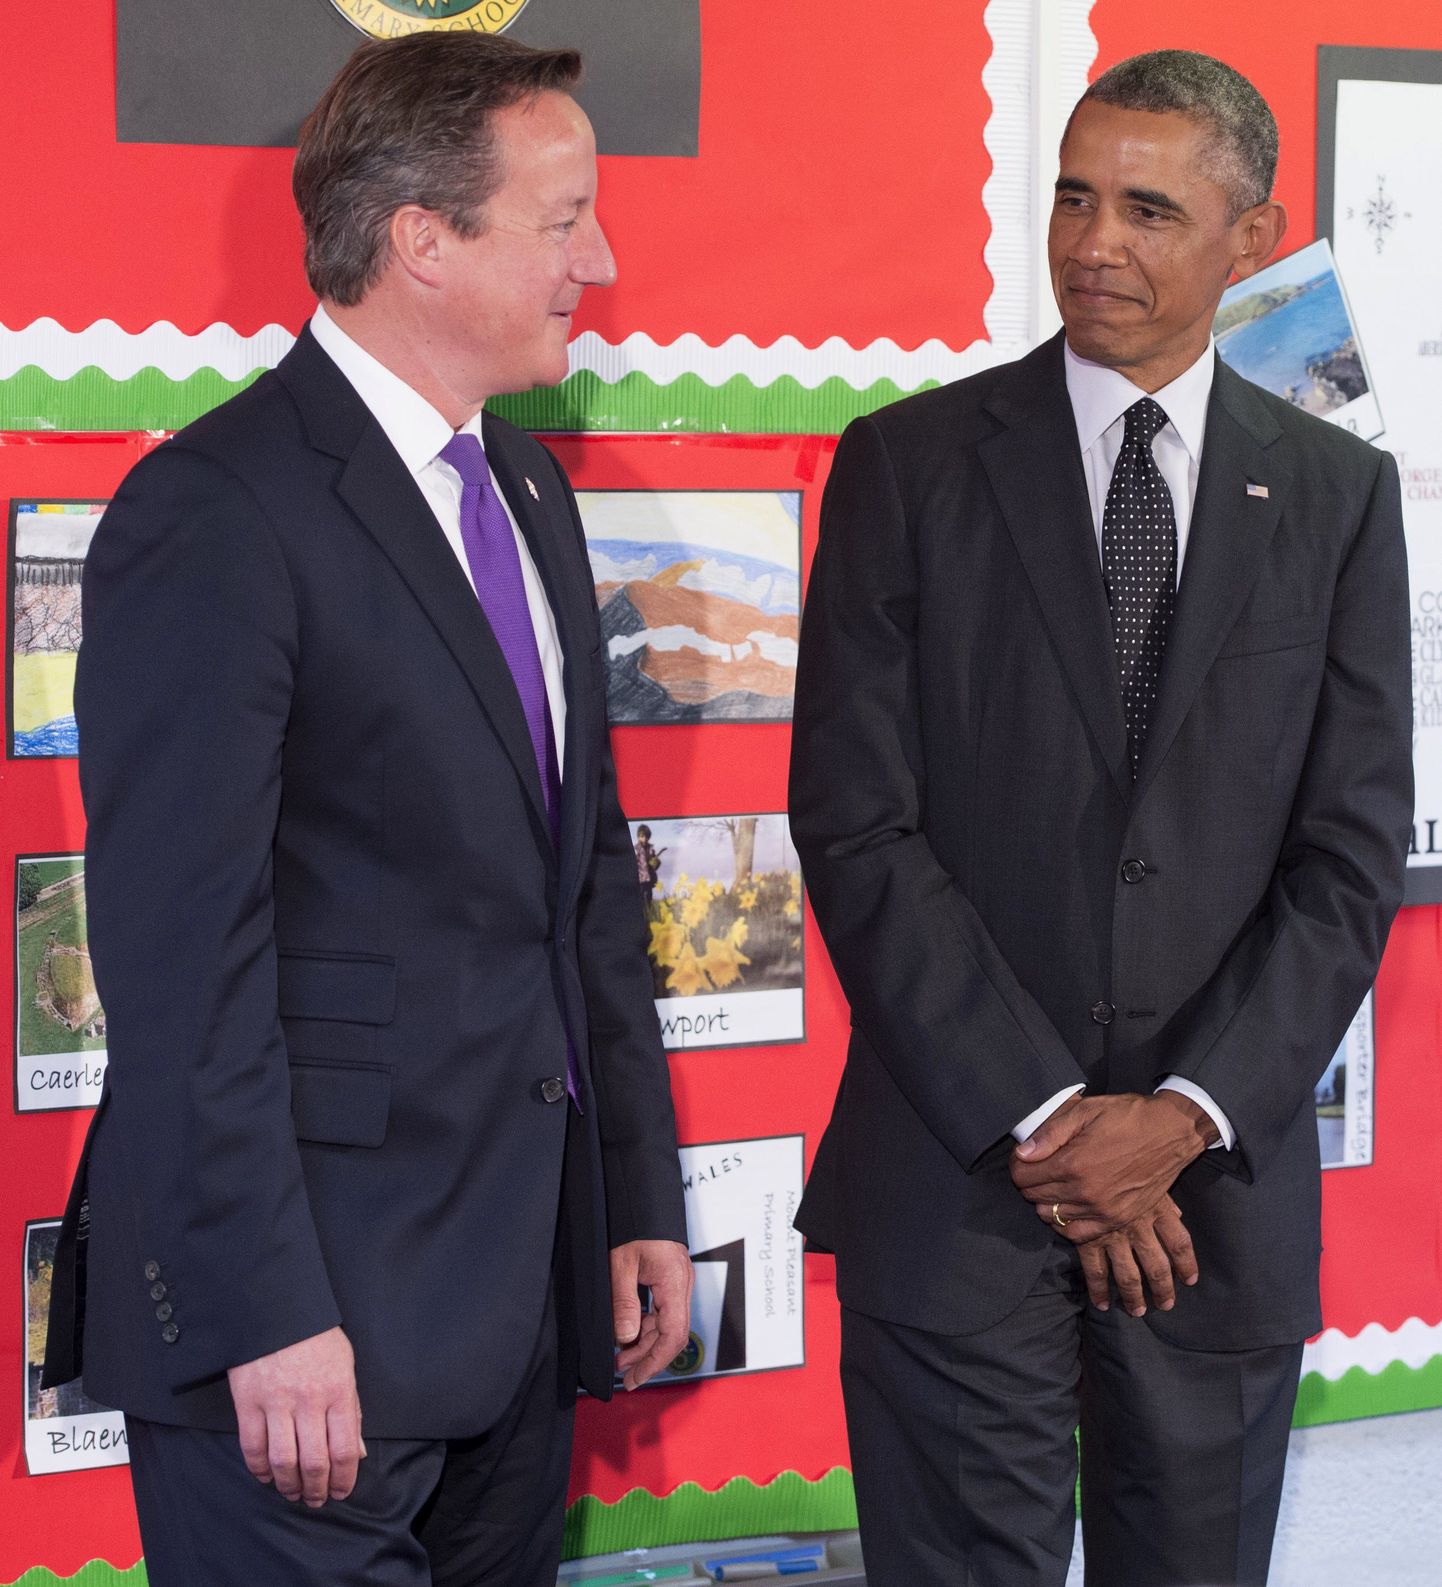 Президент США Барак Обама и премьер-министр Великобритании Дэвид Кэмерон